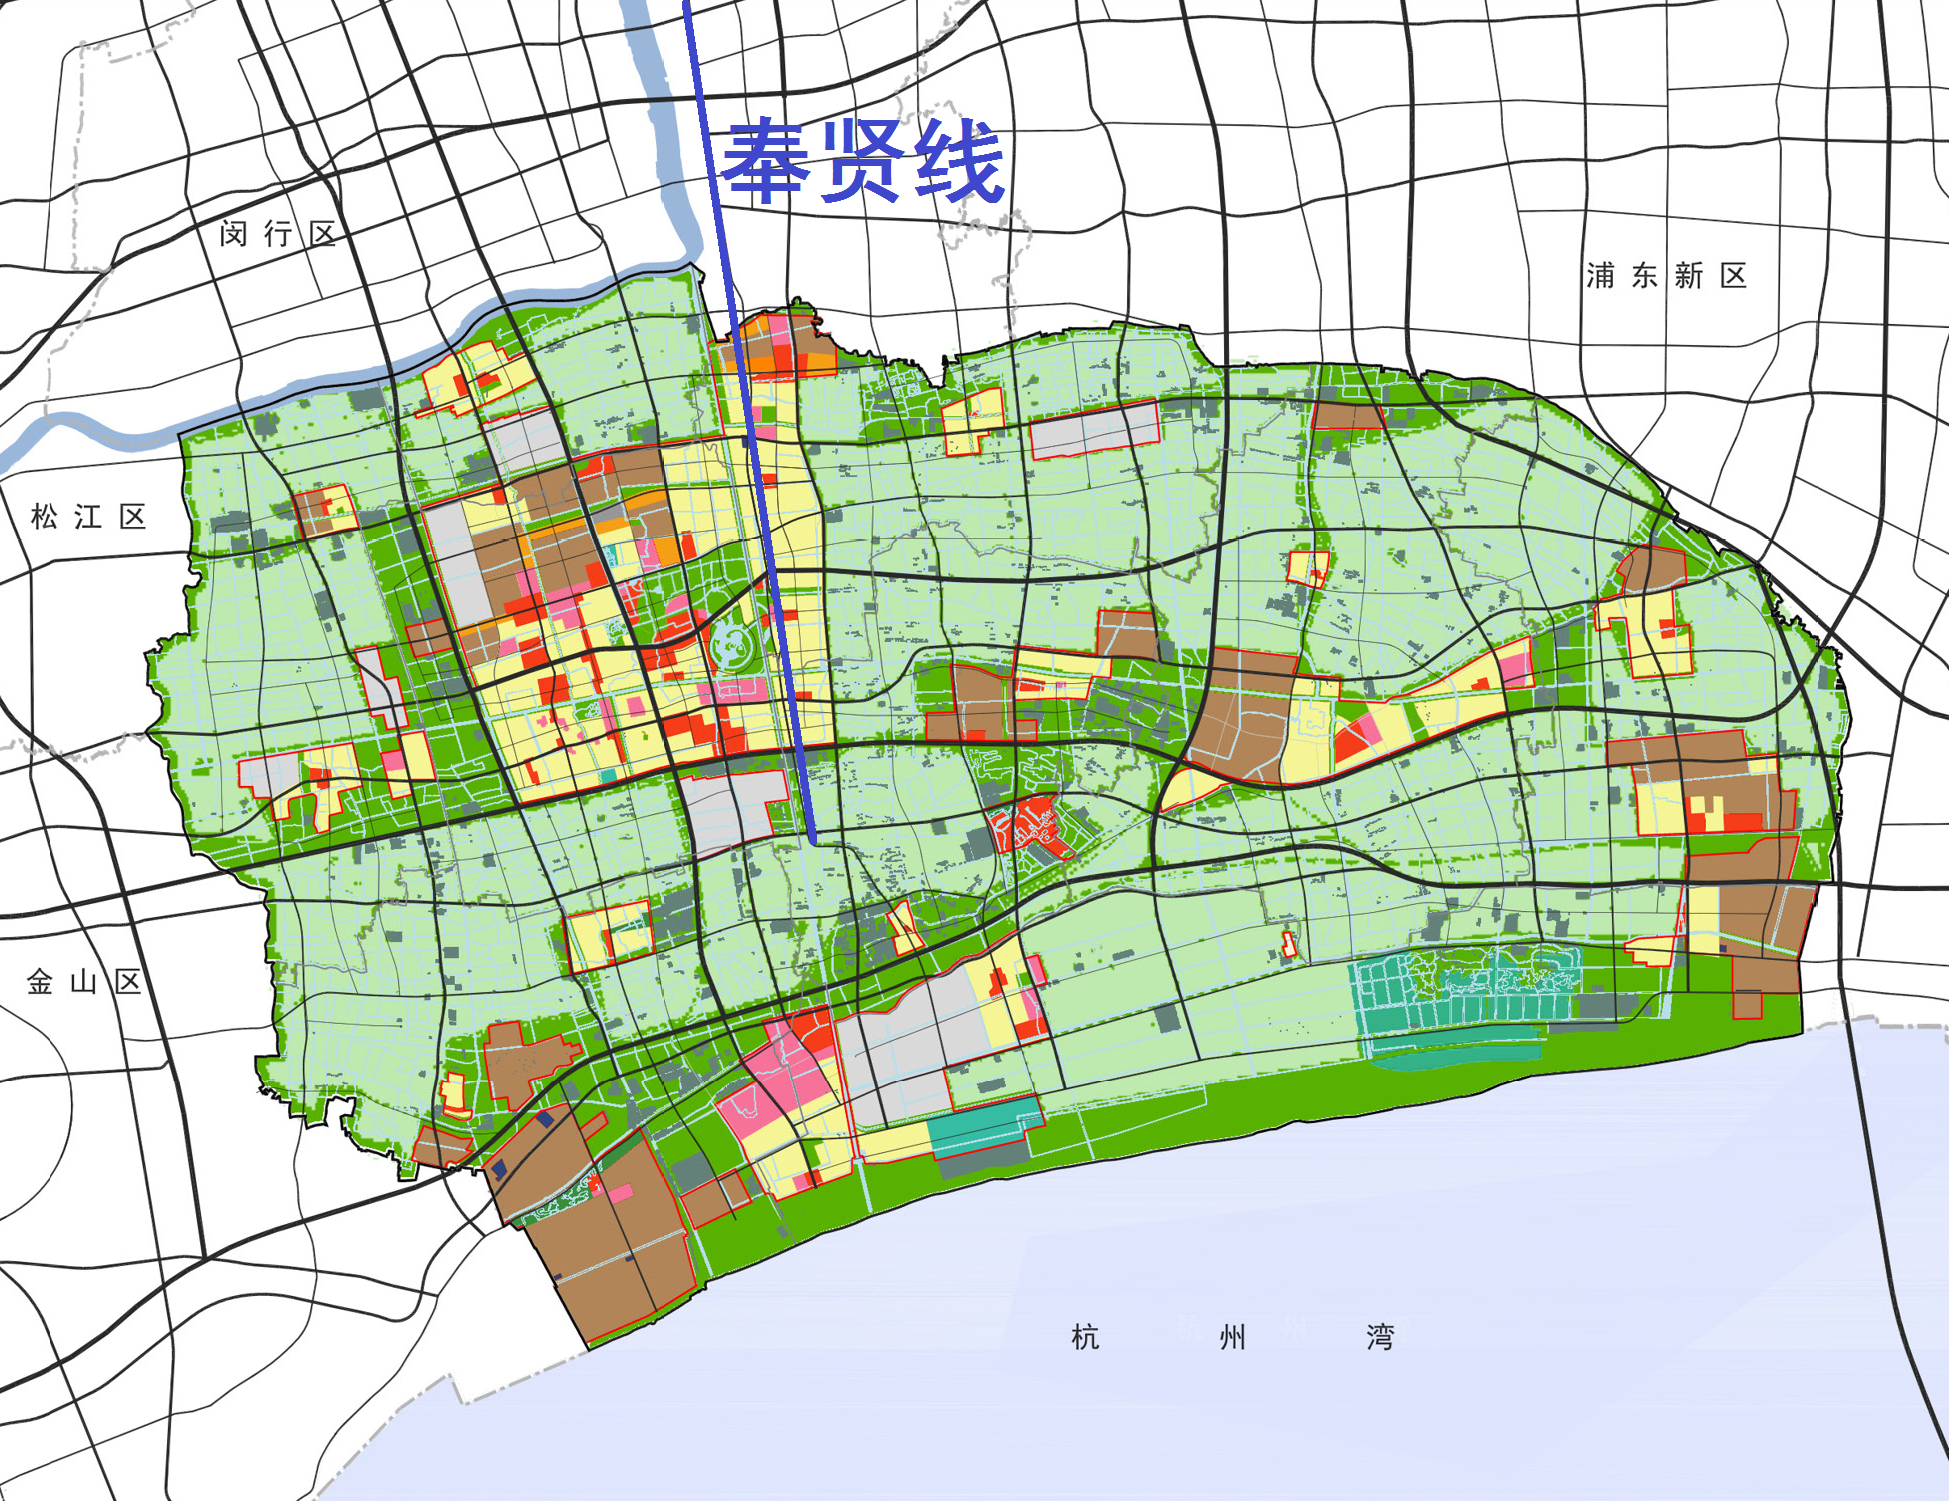 解析上海市域铁路奉贤线:作为南北向轨道交通直连市区与奉贤南桥